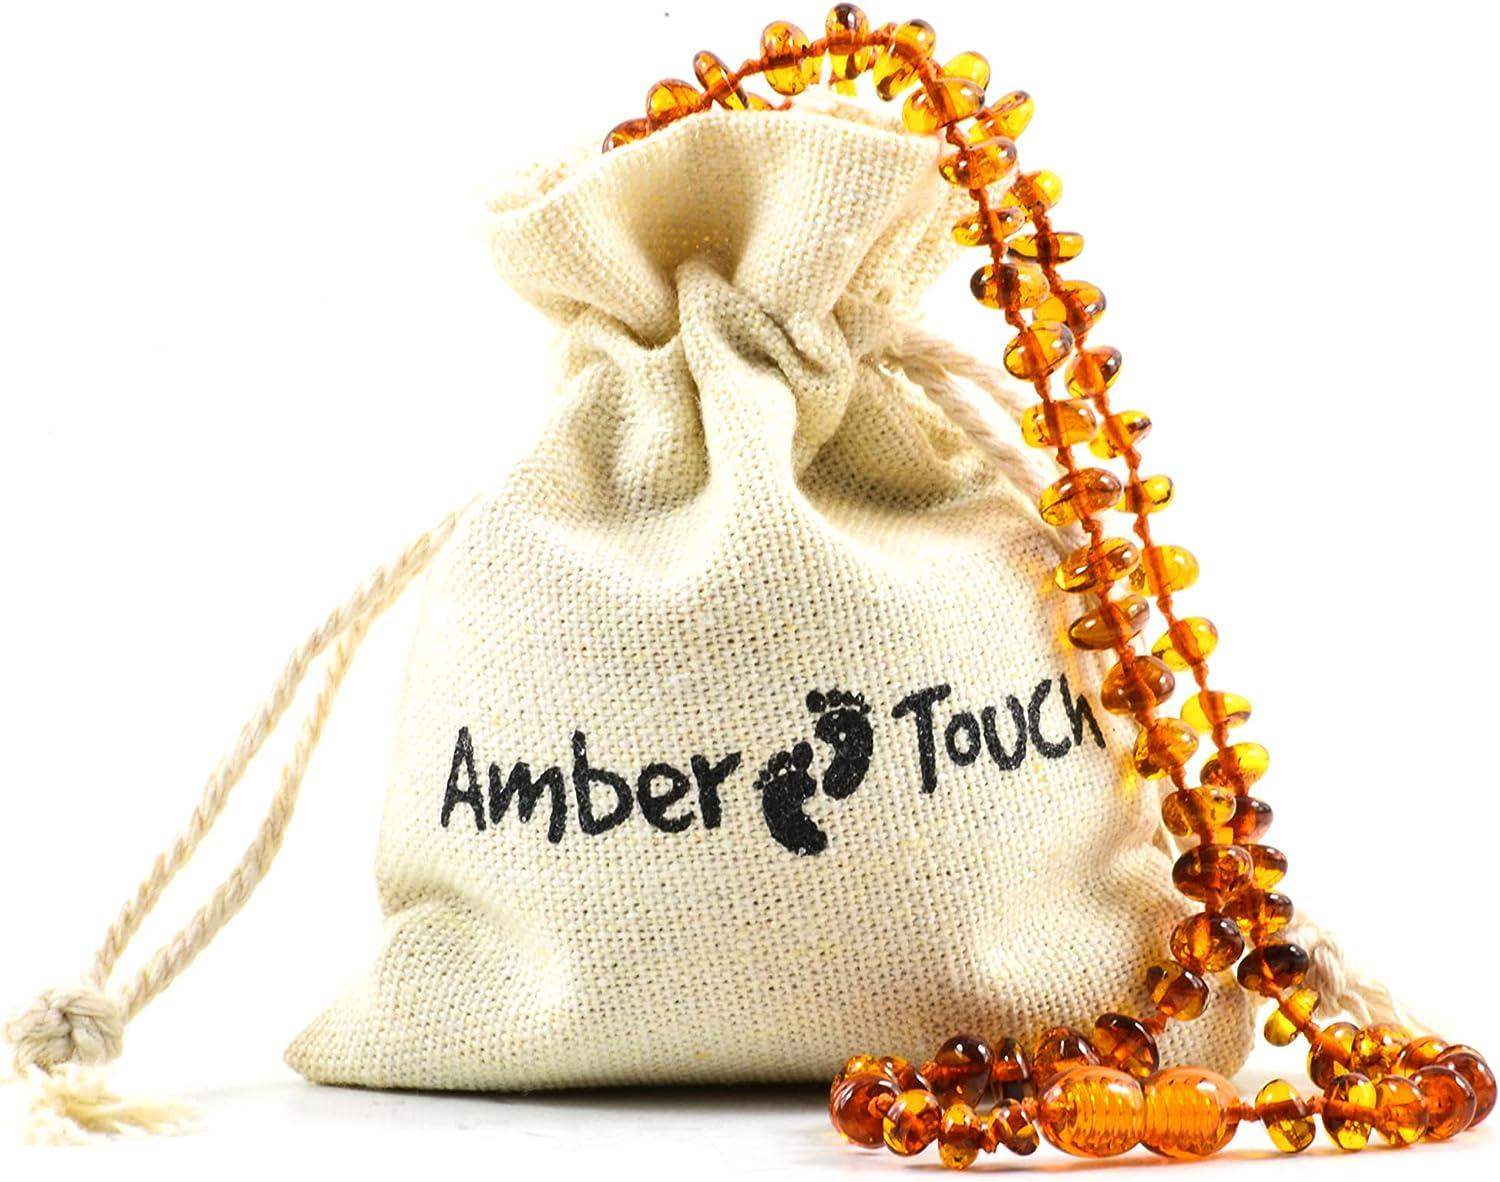 Baltic Amber - What is it? – Amber Guru